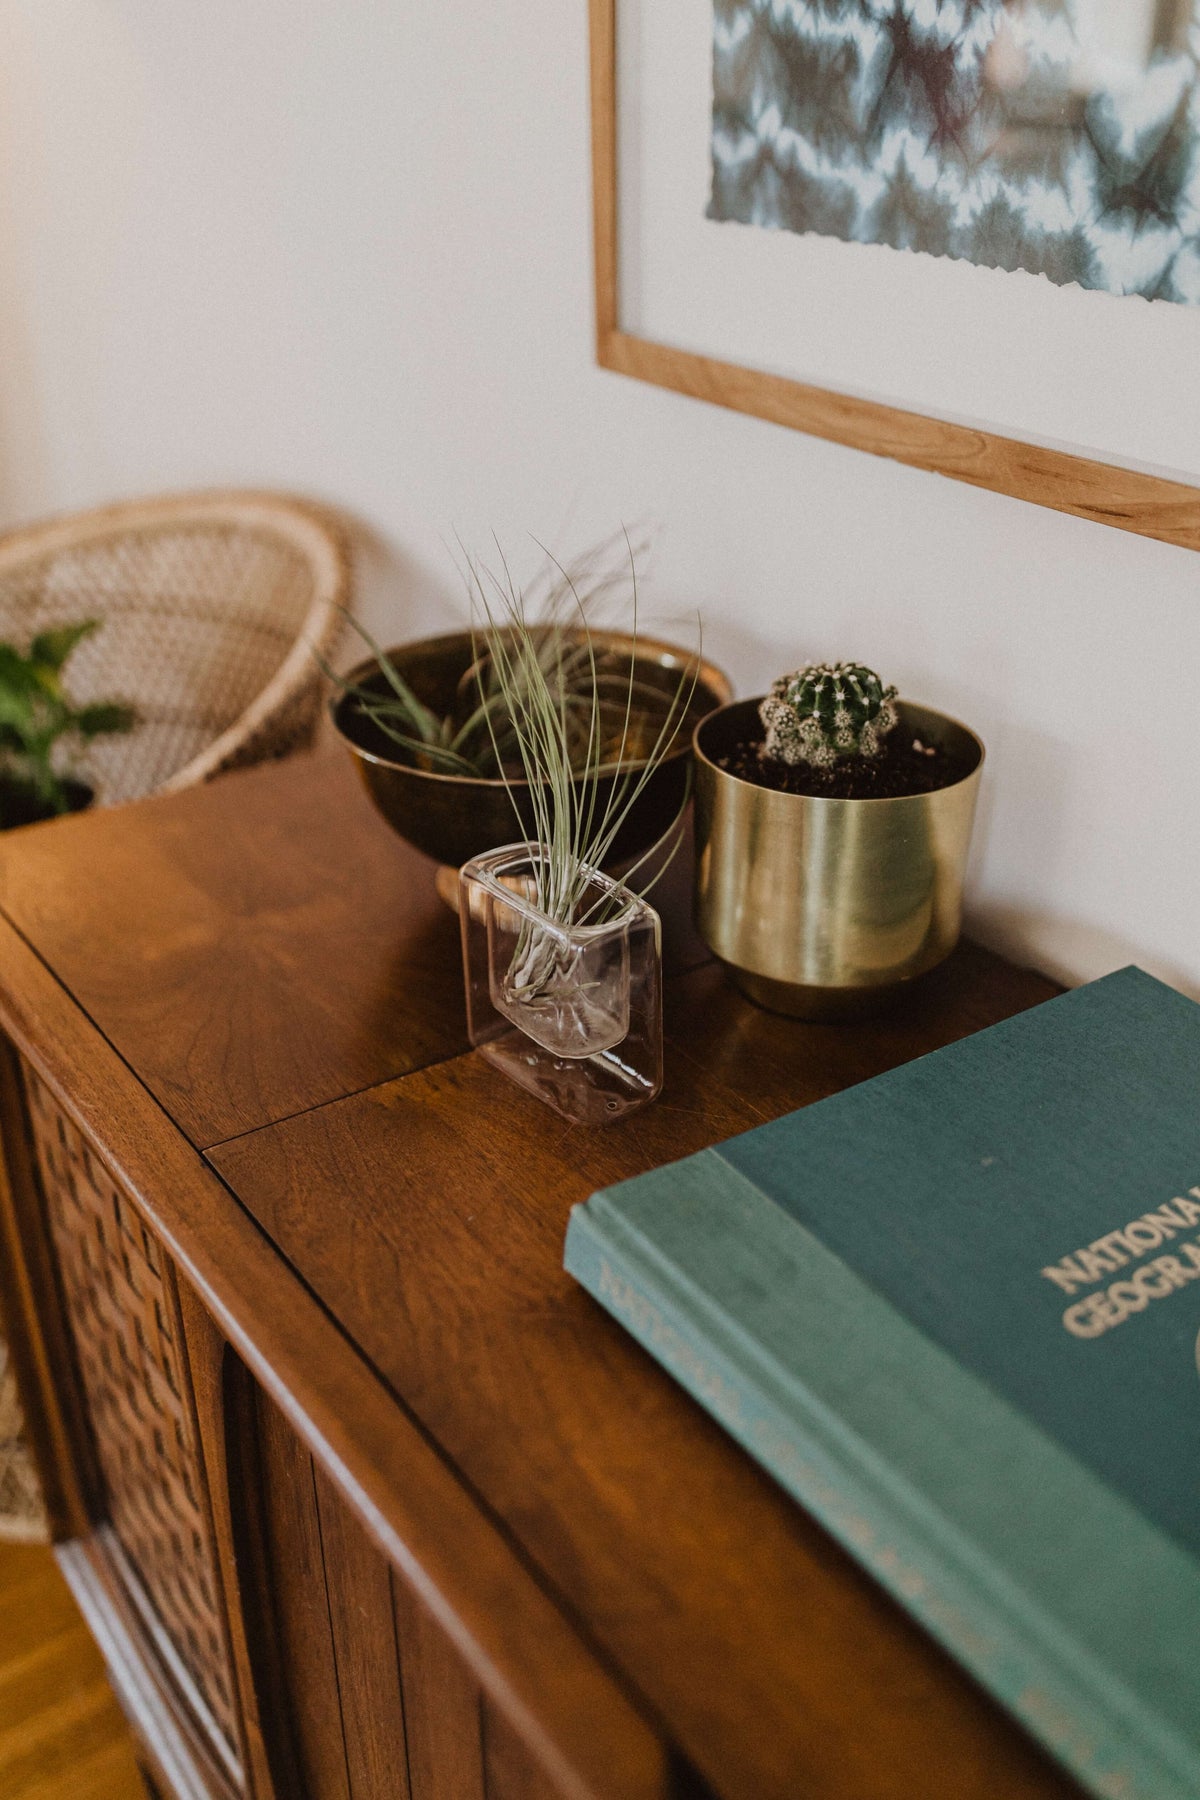 Luftpflanzen und kleiner Kaktus auf einem Sideboard, daneben ein Buch